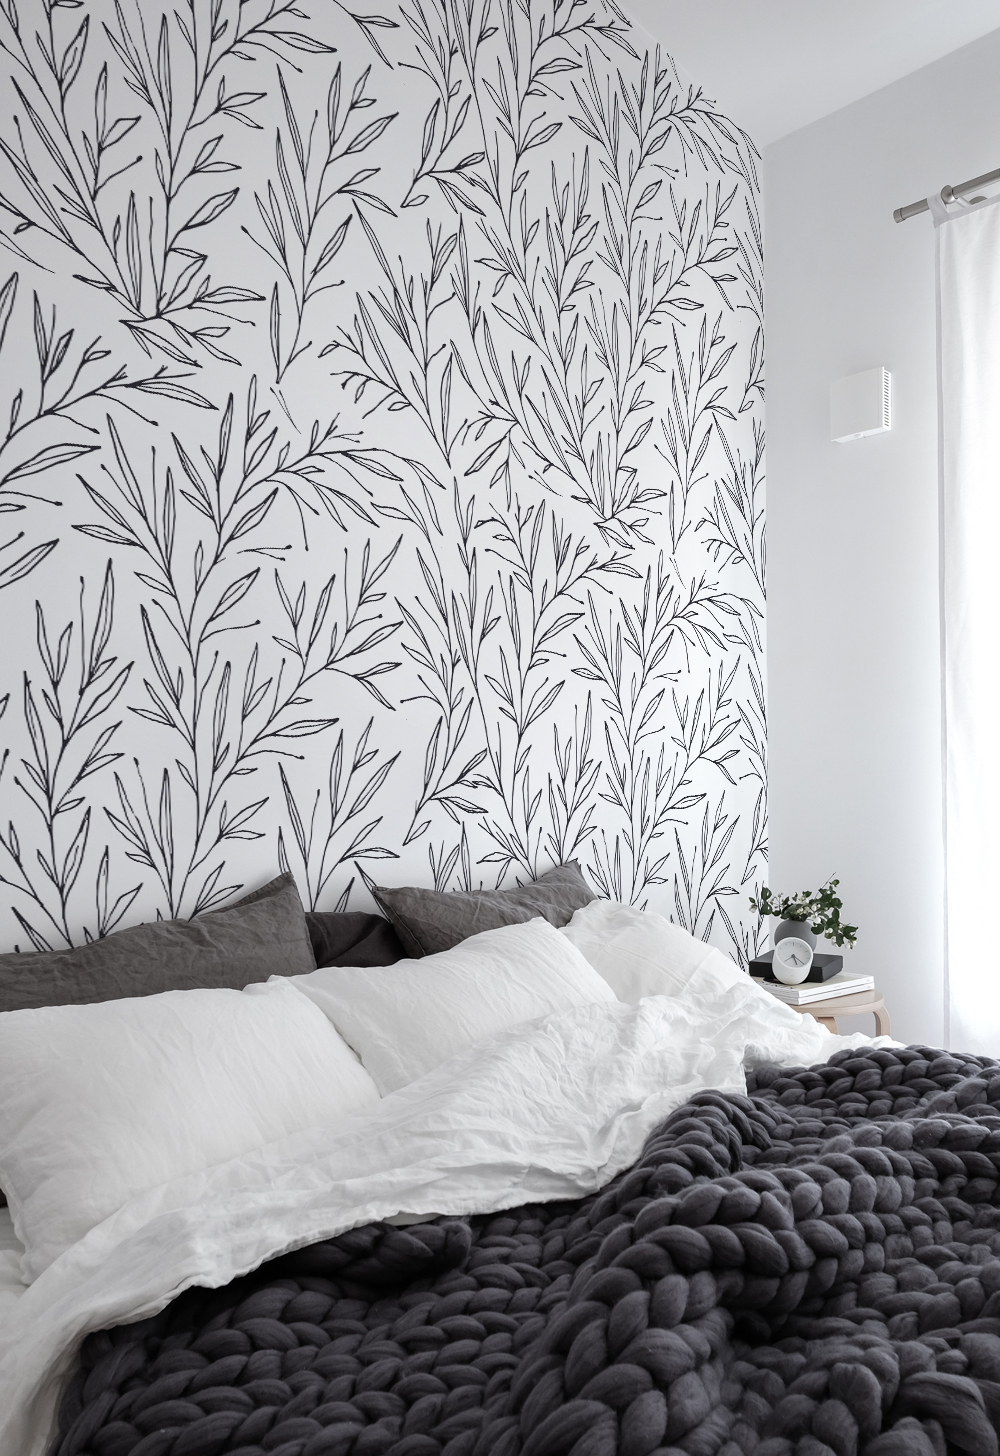 Papier peint N06 branches oliviers minimaliste noir et blanc chambre